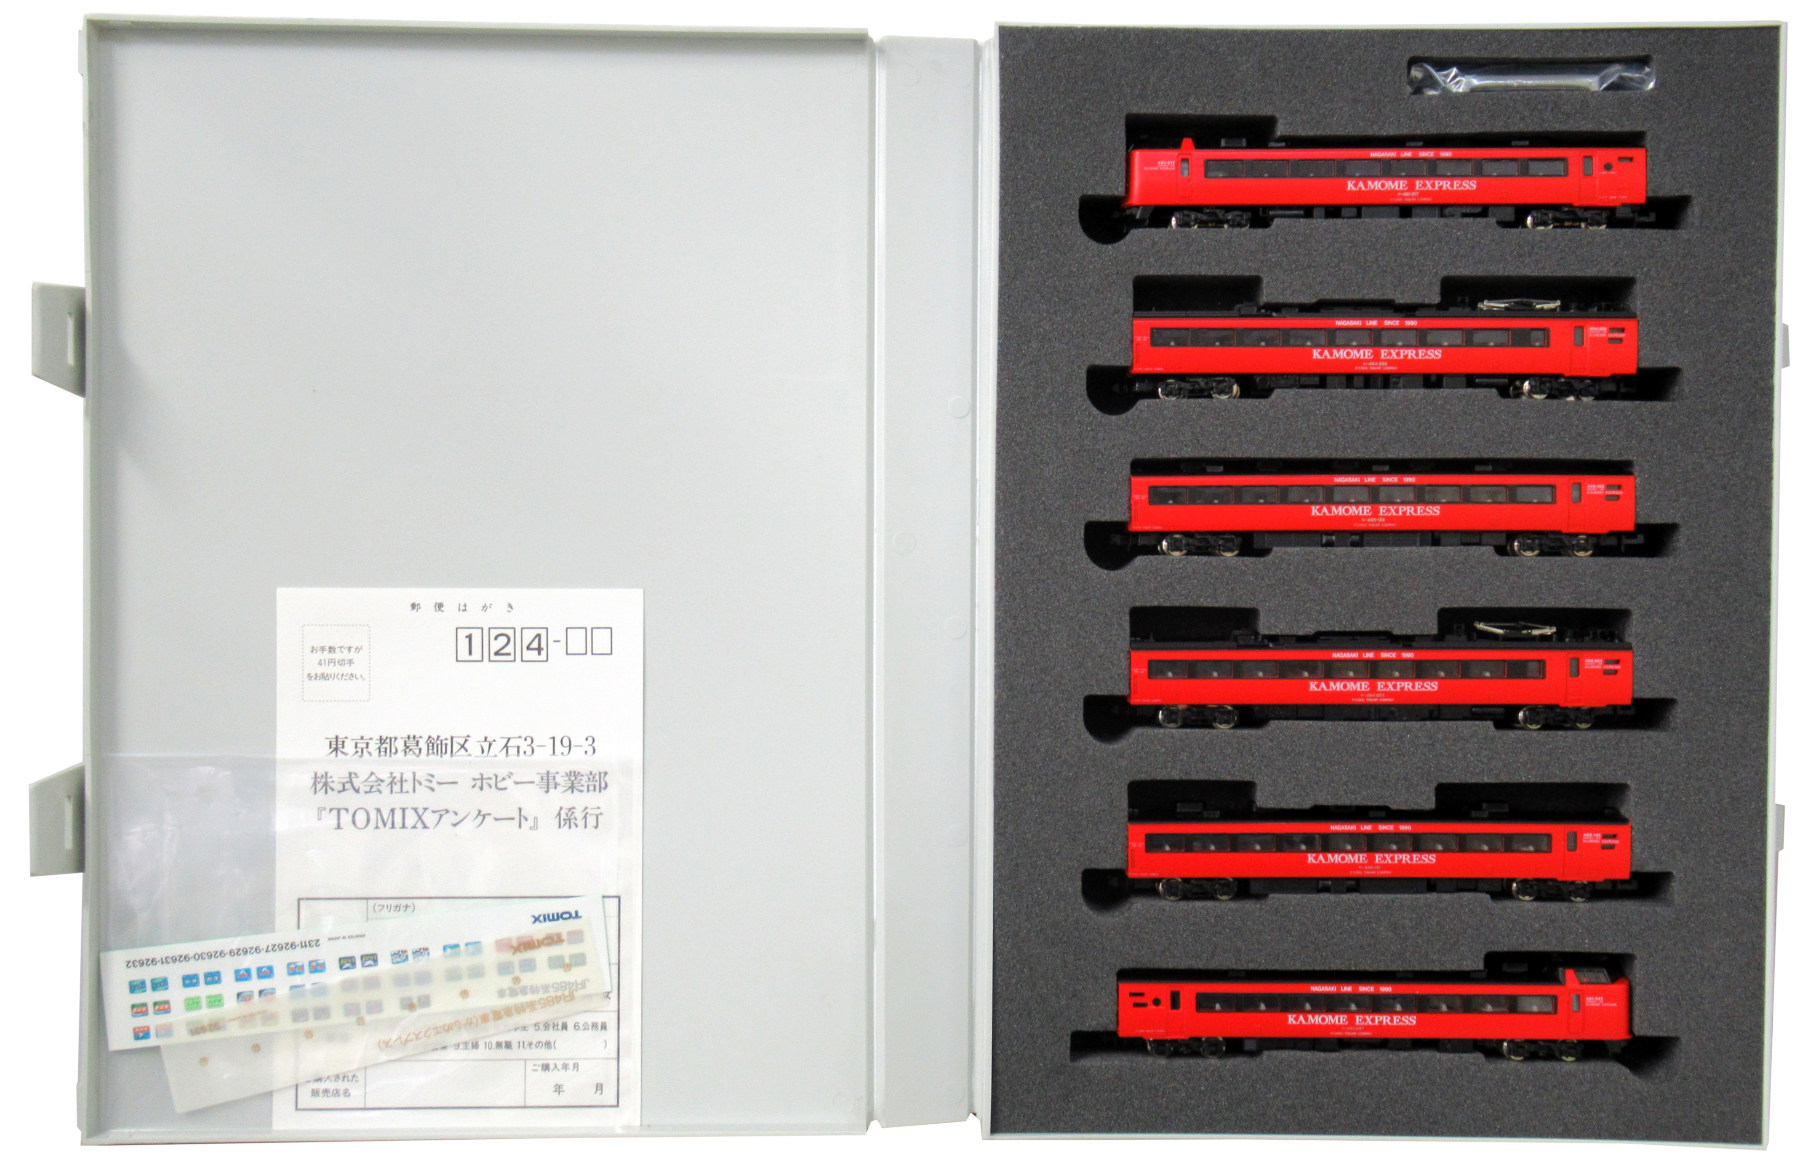 JR485系特急電車 かもめエクスプレス6輌セット - 鉄道模型